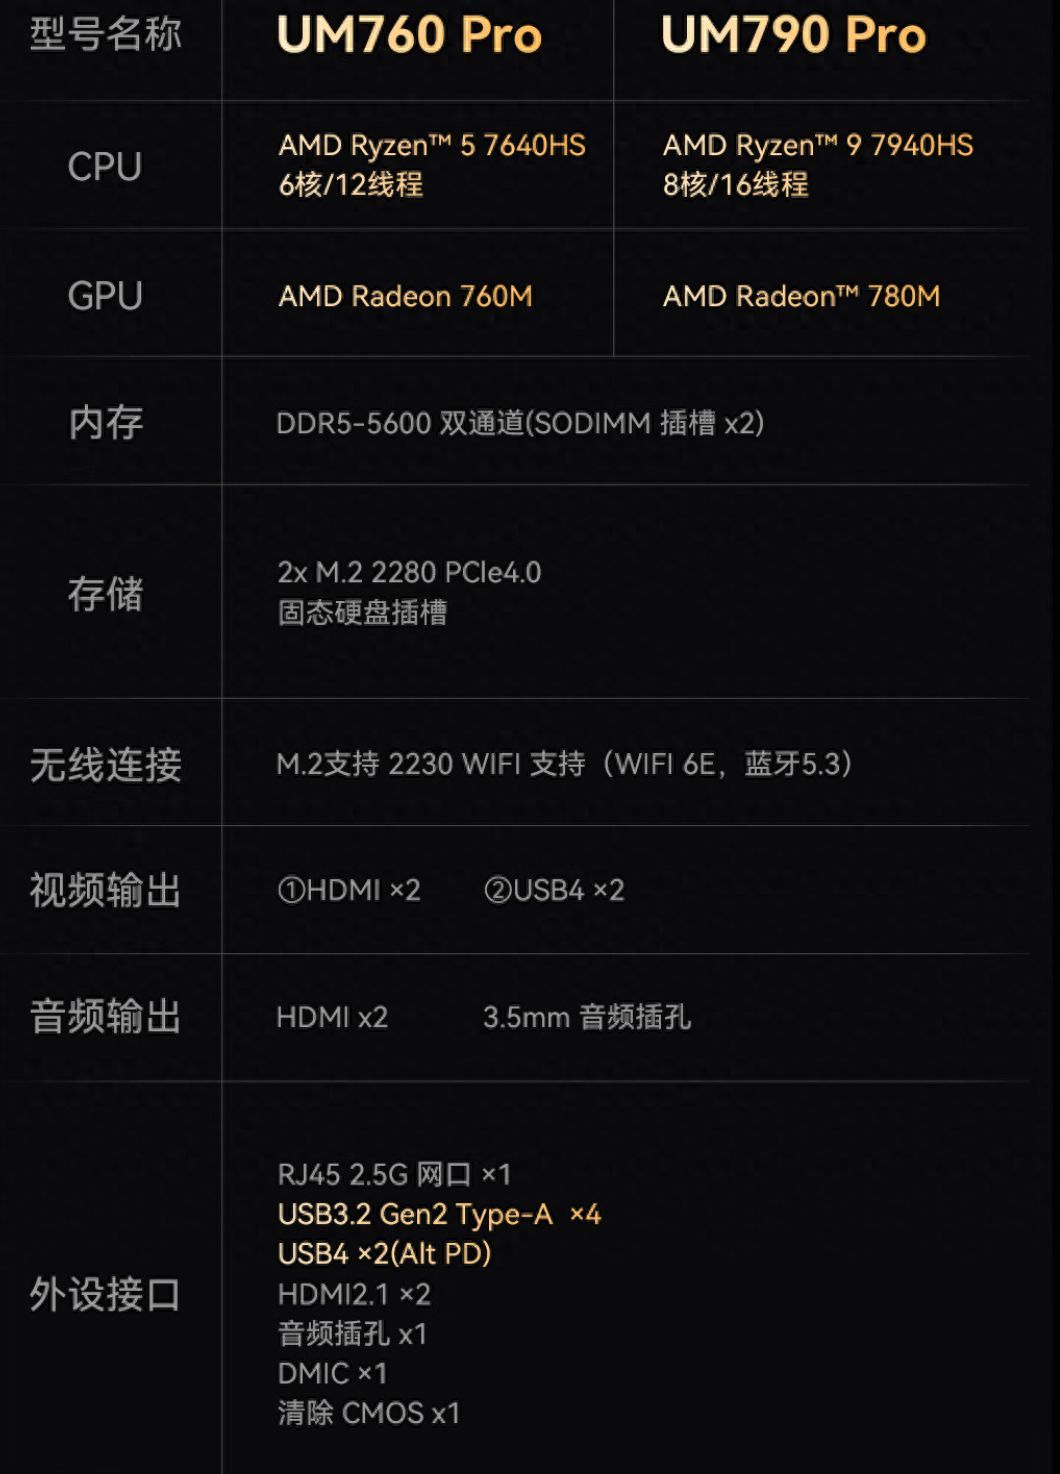 铭凡推出新款UM760 Pro/790 Pro迷你主机